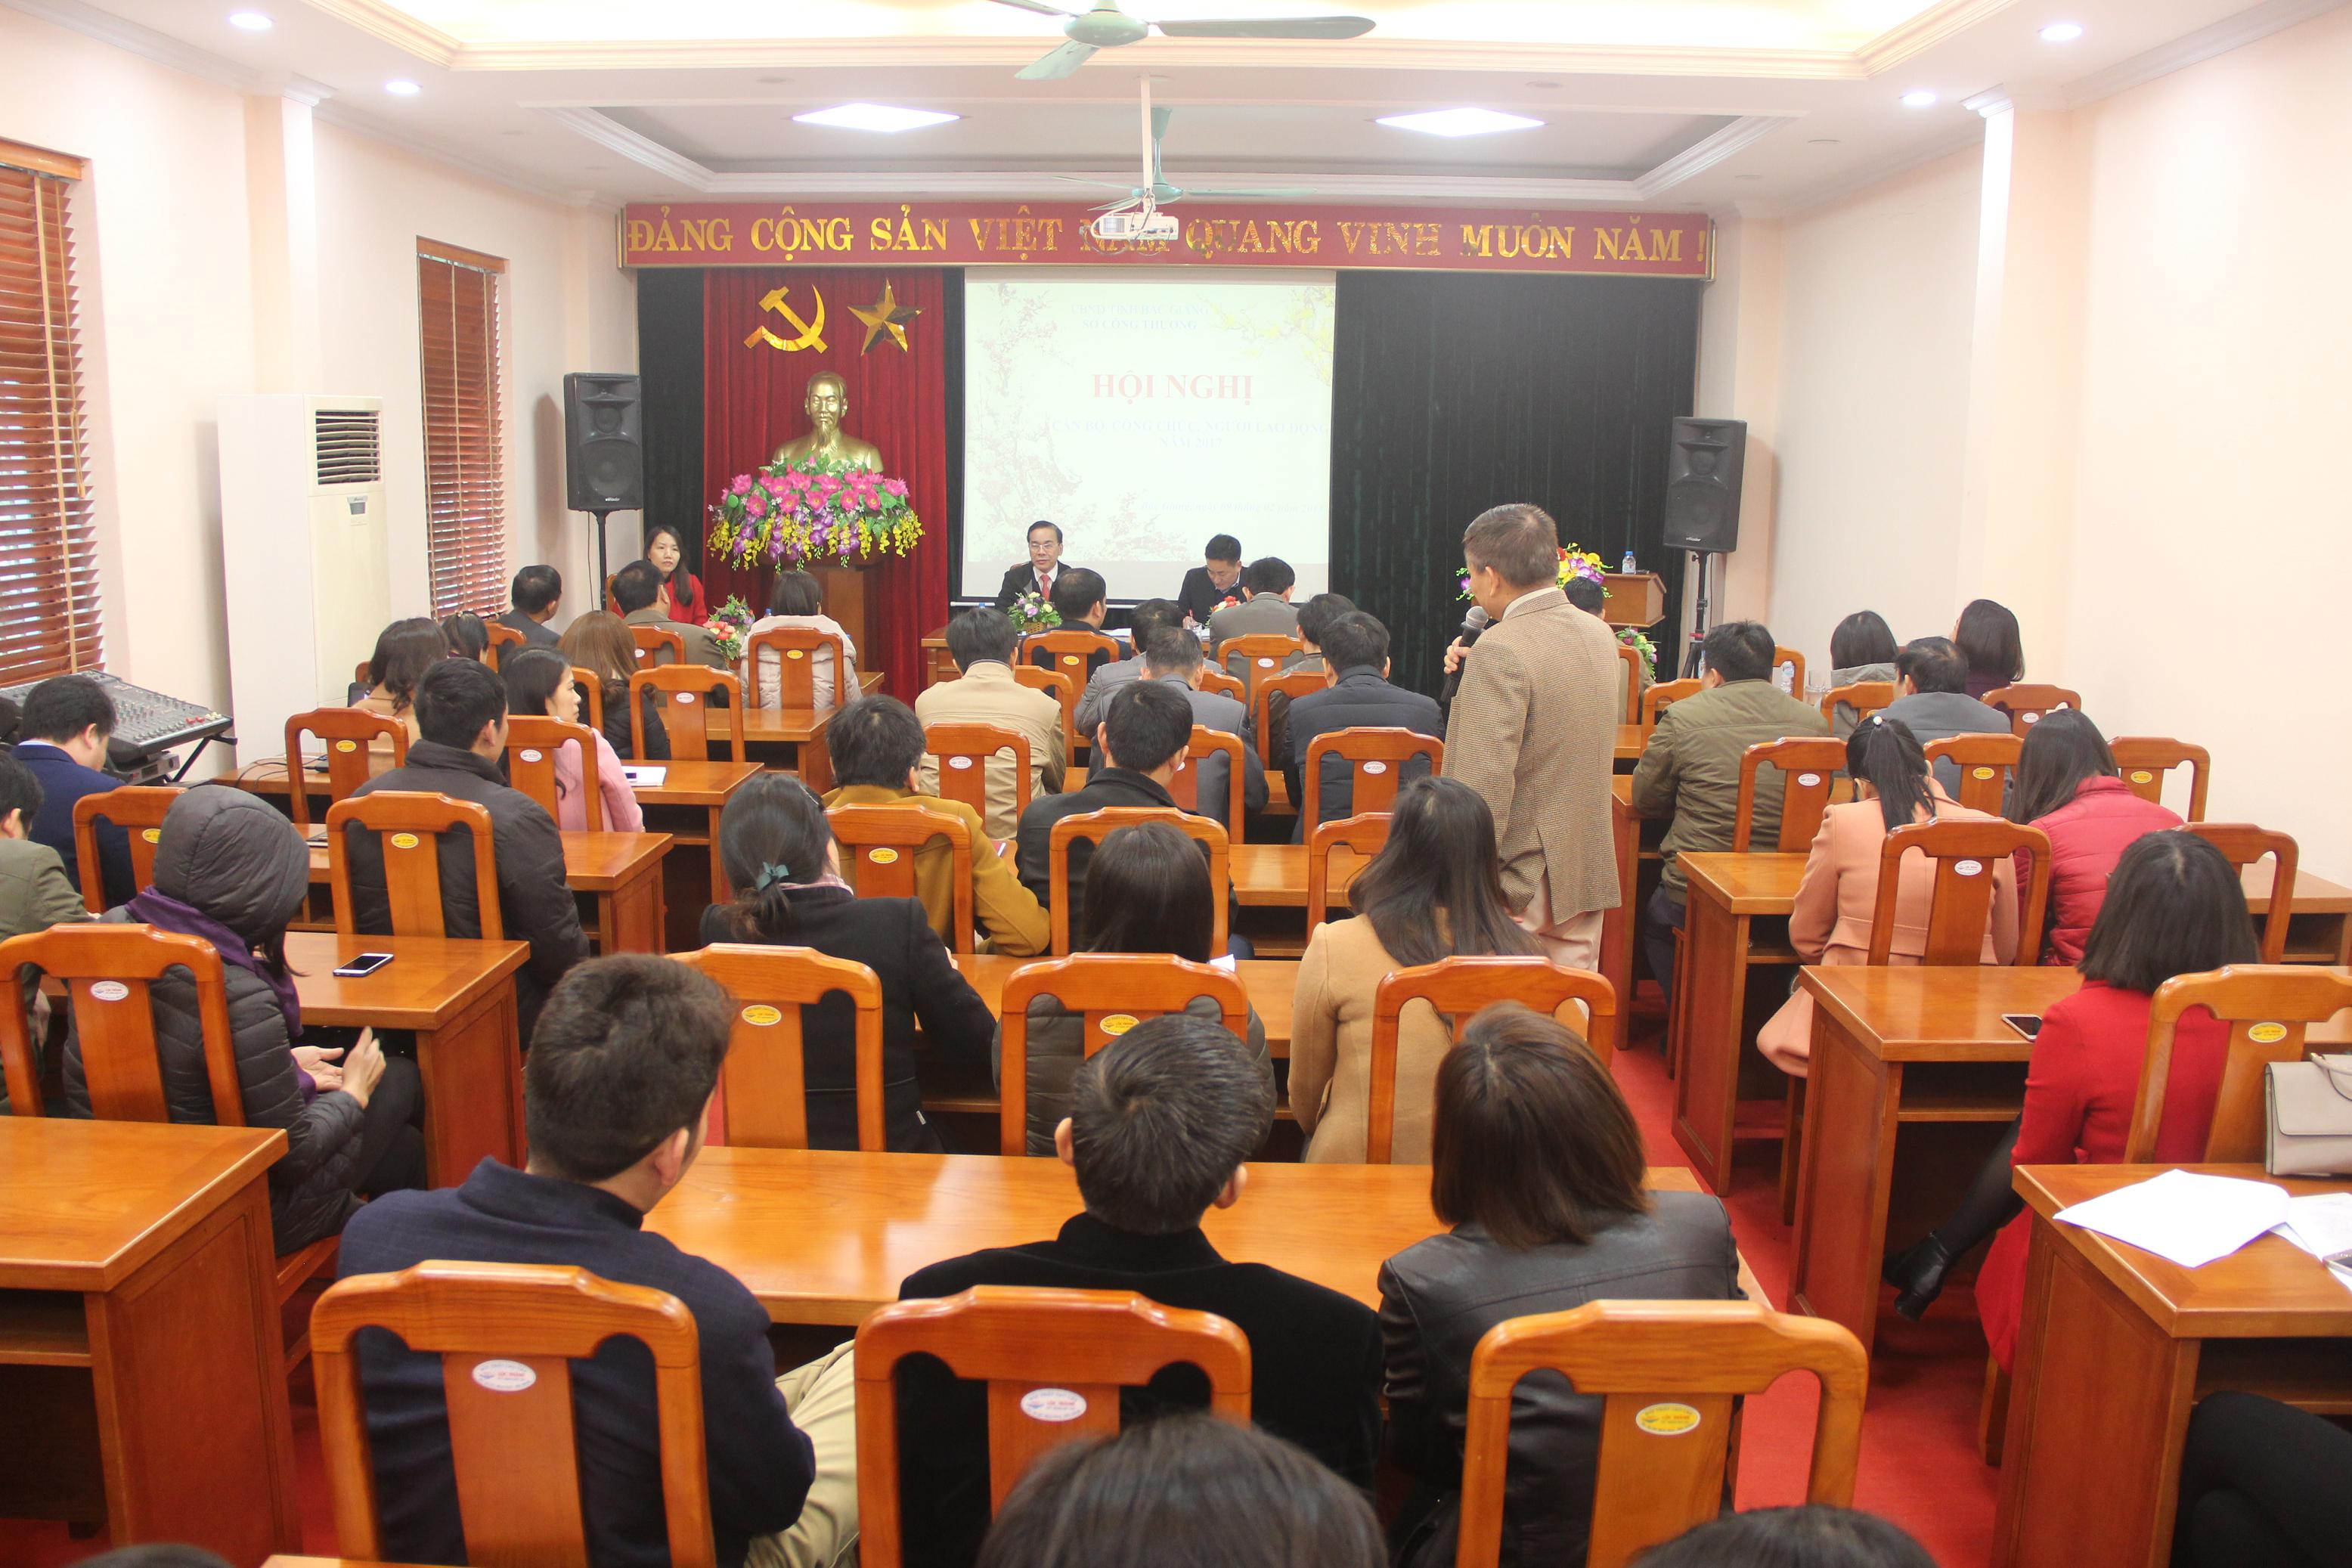 Sở Công Thương Bắc Giang tổ chức Hội nghị công chức, viên chức và người lao động năm 2018